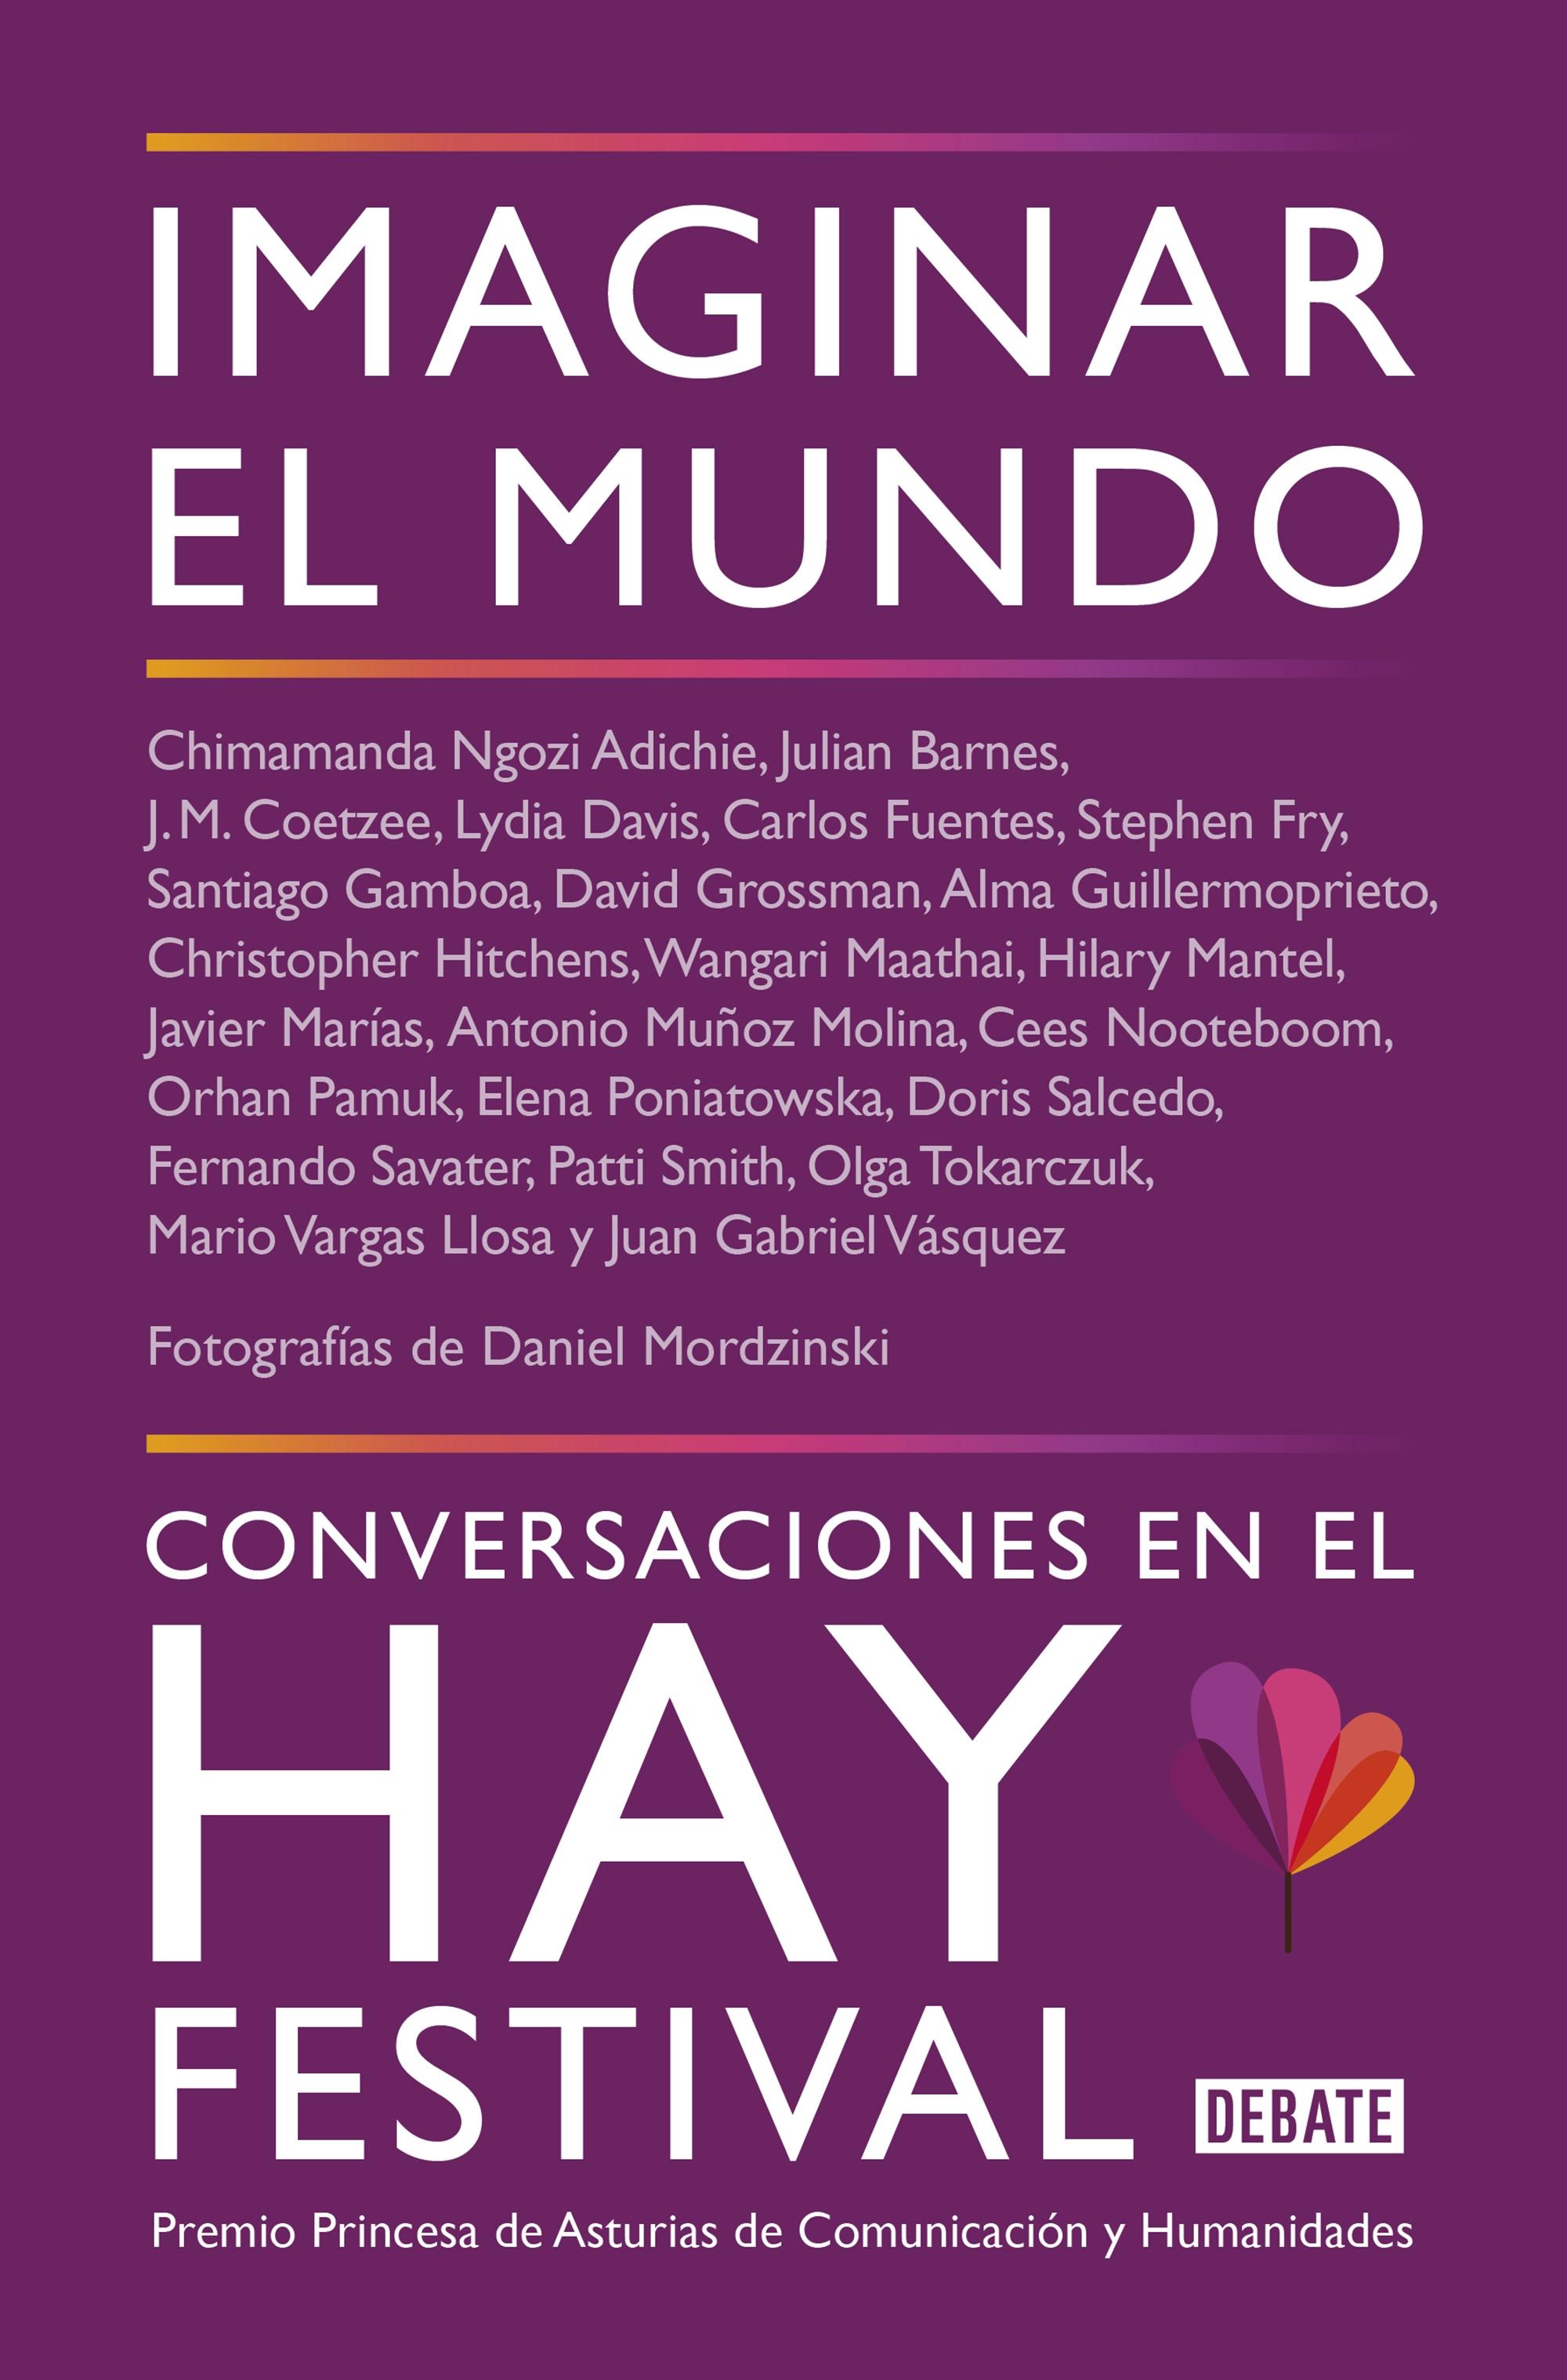 Imaginar el Mundo "Conversaciones en el Hay Festival". 